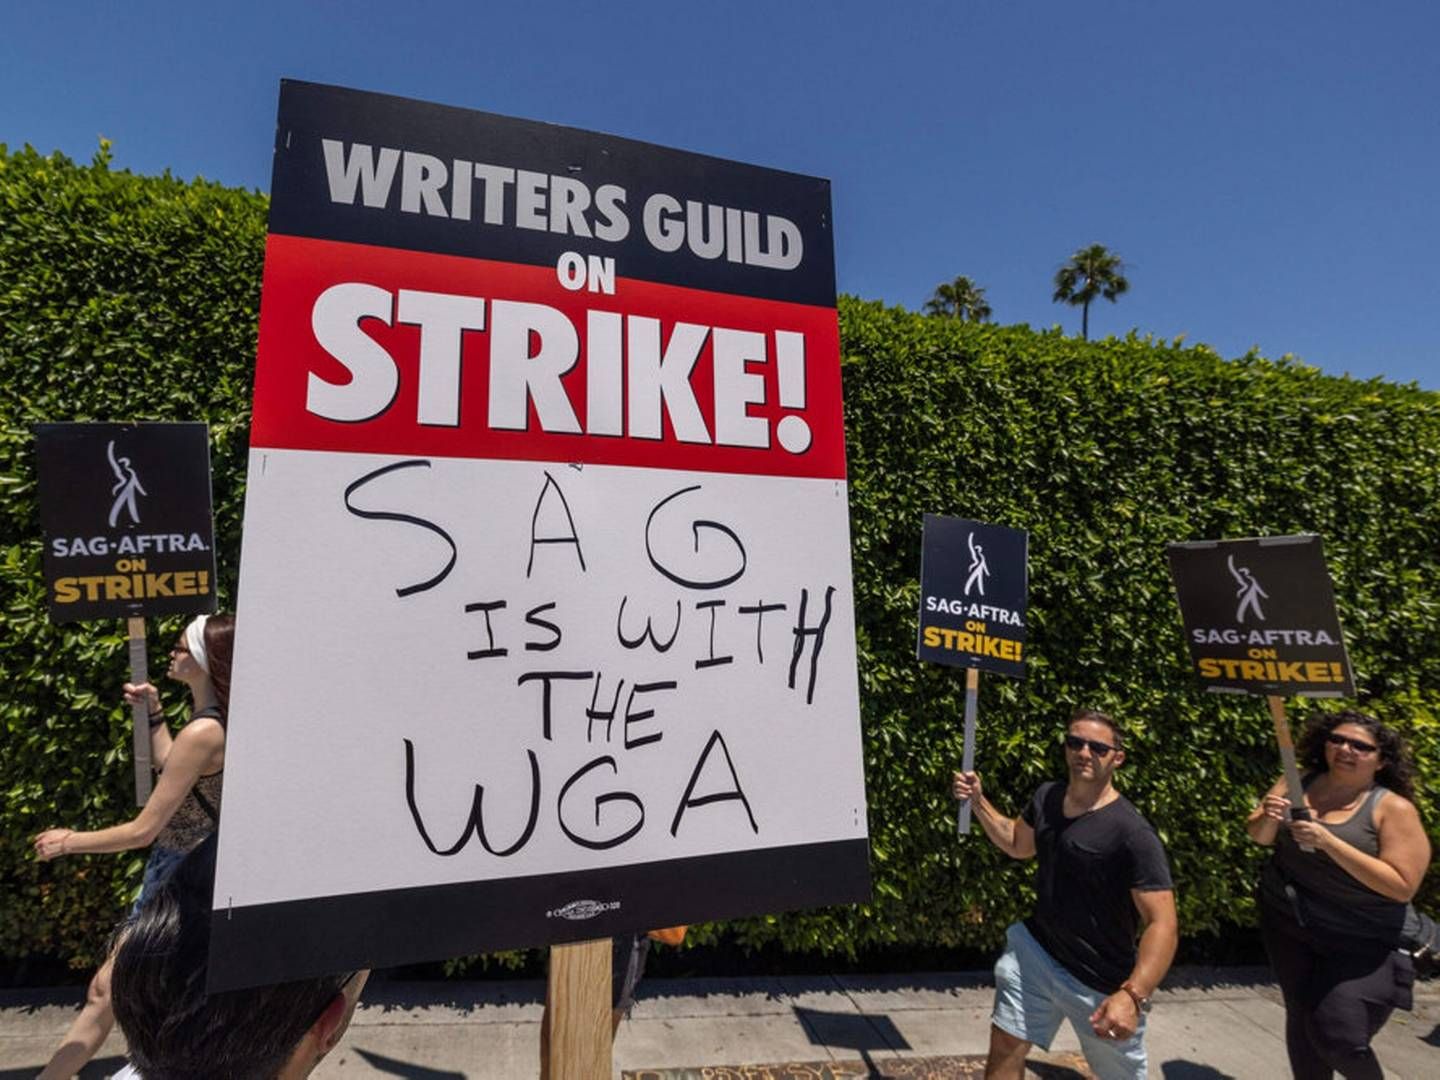 En strejke blandt manuskriptforfattere i Hollywood, som begyndte i maj, er blevet udvidet, da skuespillerne i Hollywood sluttede sig til strejken i juli. Mens forfatterne repræsenteres af fagforeningen WGA, er mange skuespillere samlet i SAG-AFTRA. (Arkivfoto) | Foto: David Mcnew/Ritzau Scanpix